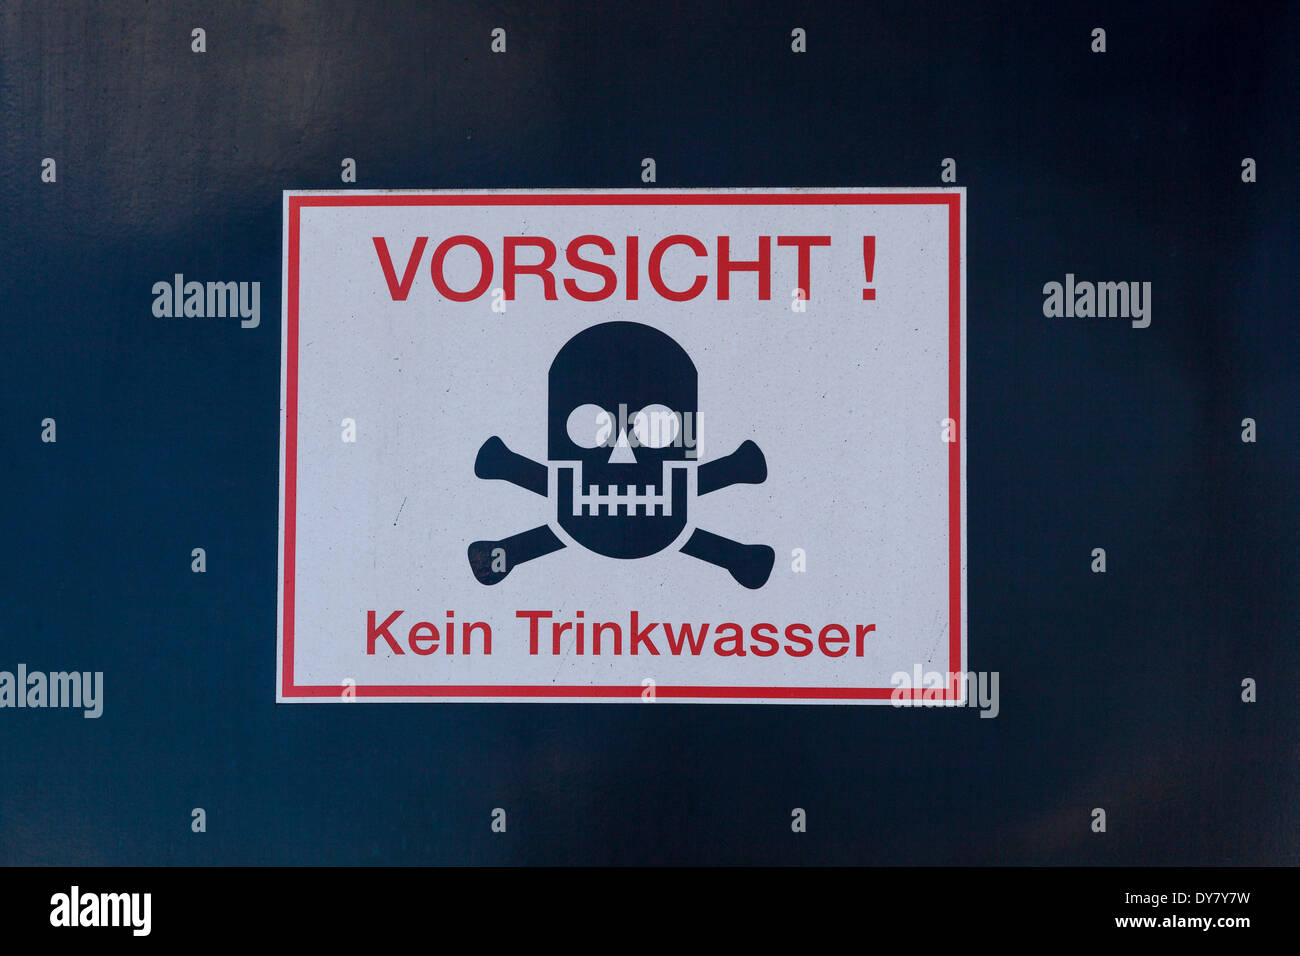 Sign 'Vorsicht! Kein Trinkwasser', German for 'Caution! No drinking water', Germany Stock Photo